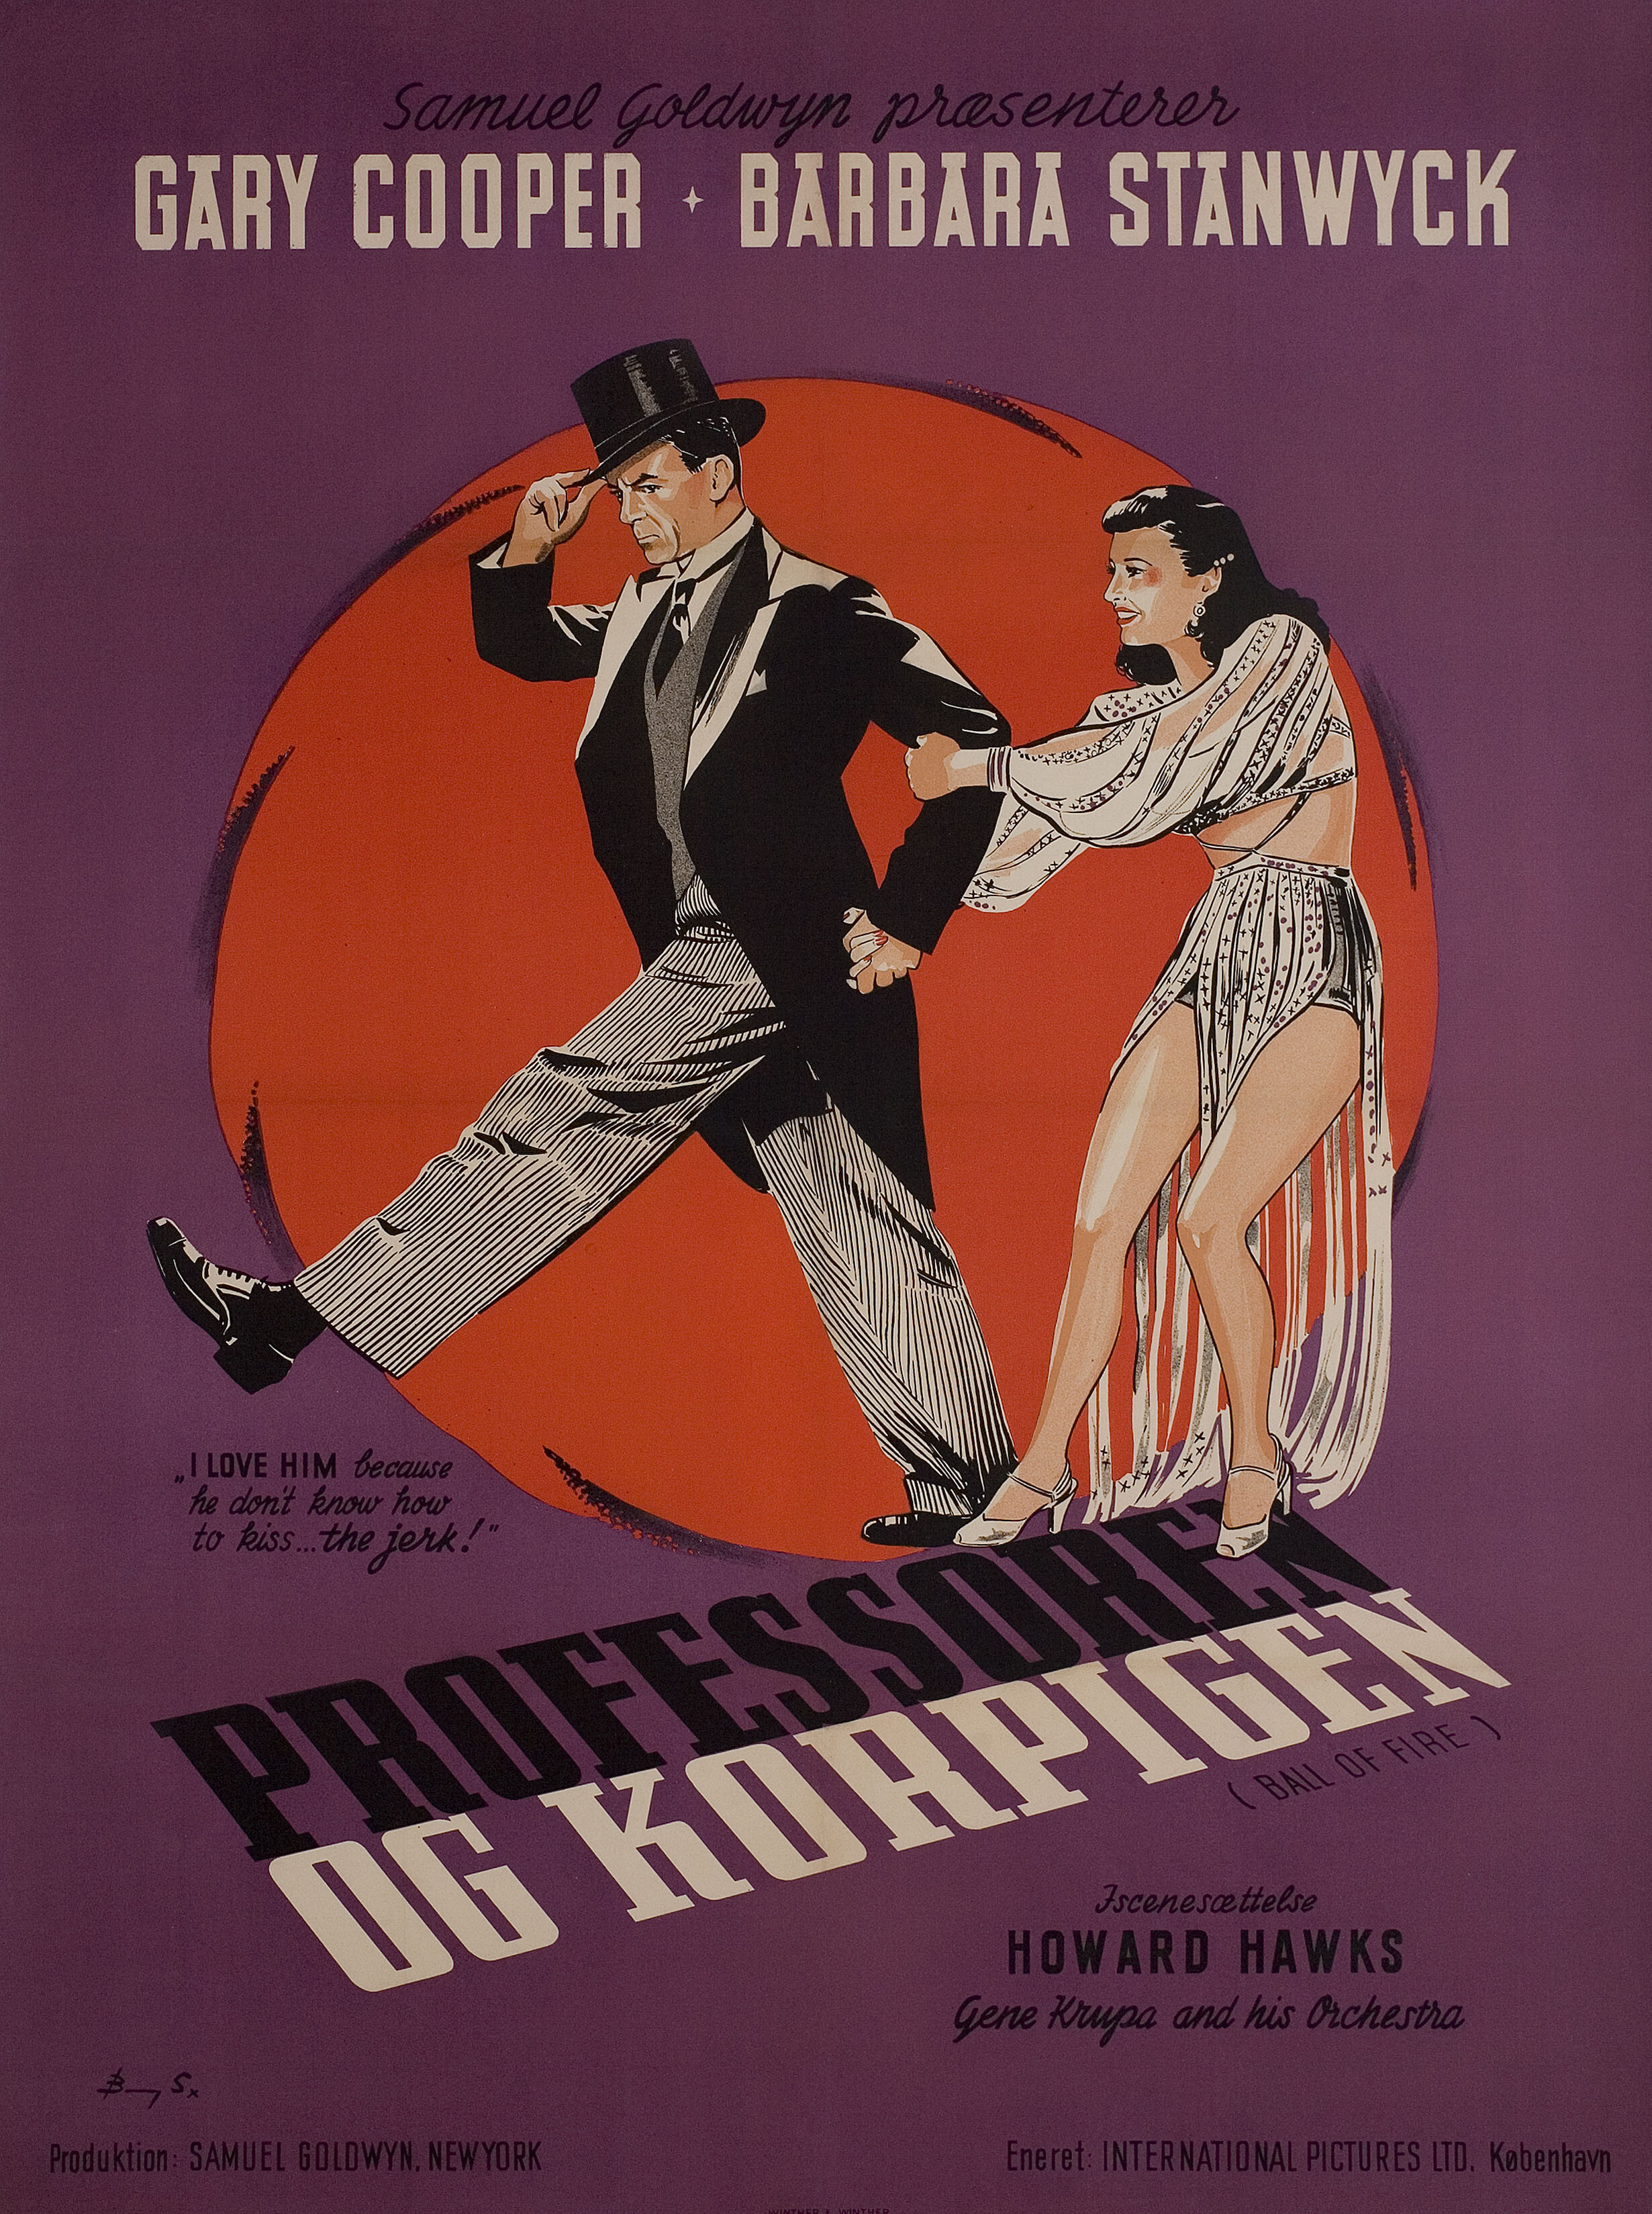 С огоньком (Ball of Fire, 1941), режиссёр Говард Хоукс, постер к фильму в стиле ар-деко (Дания, 1947 год), автор Стивенов